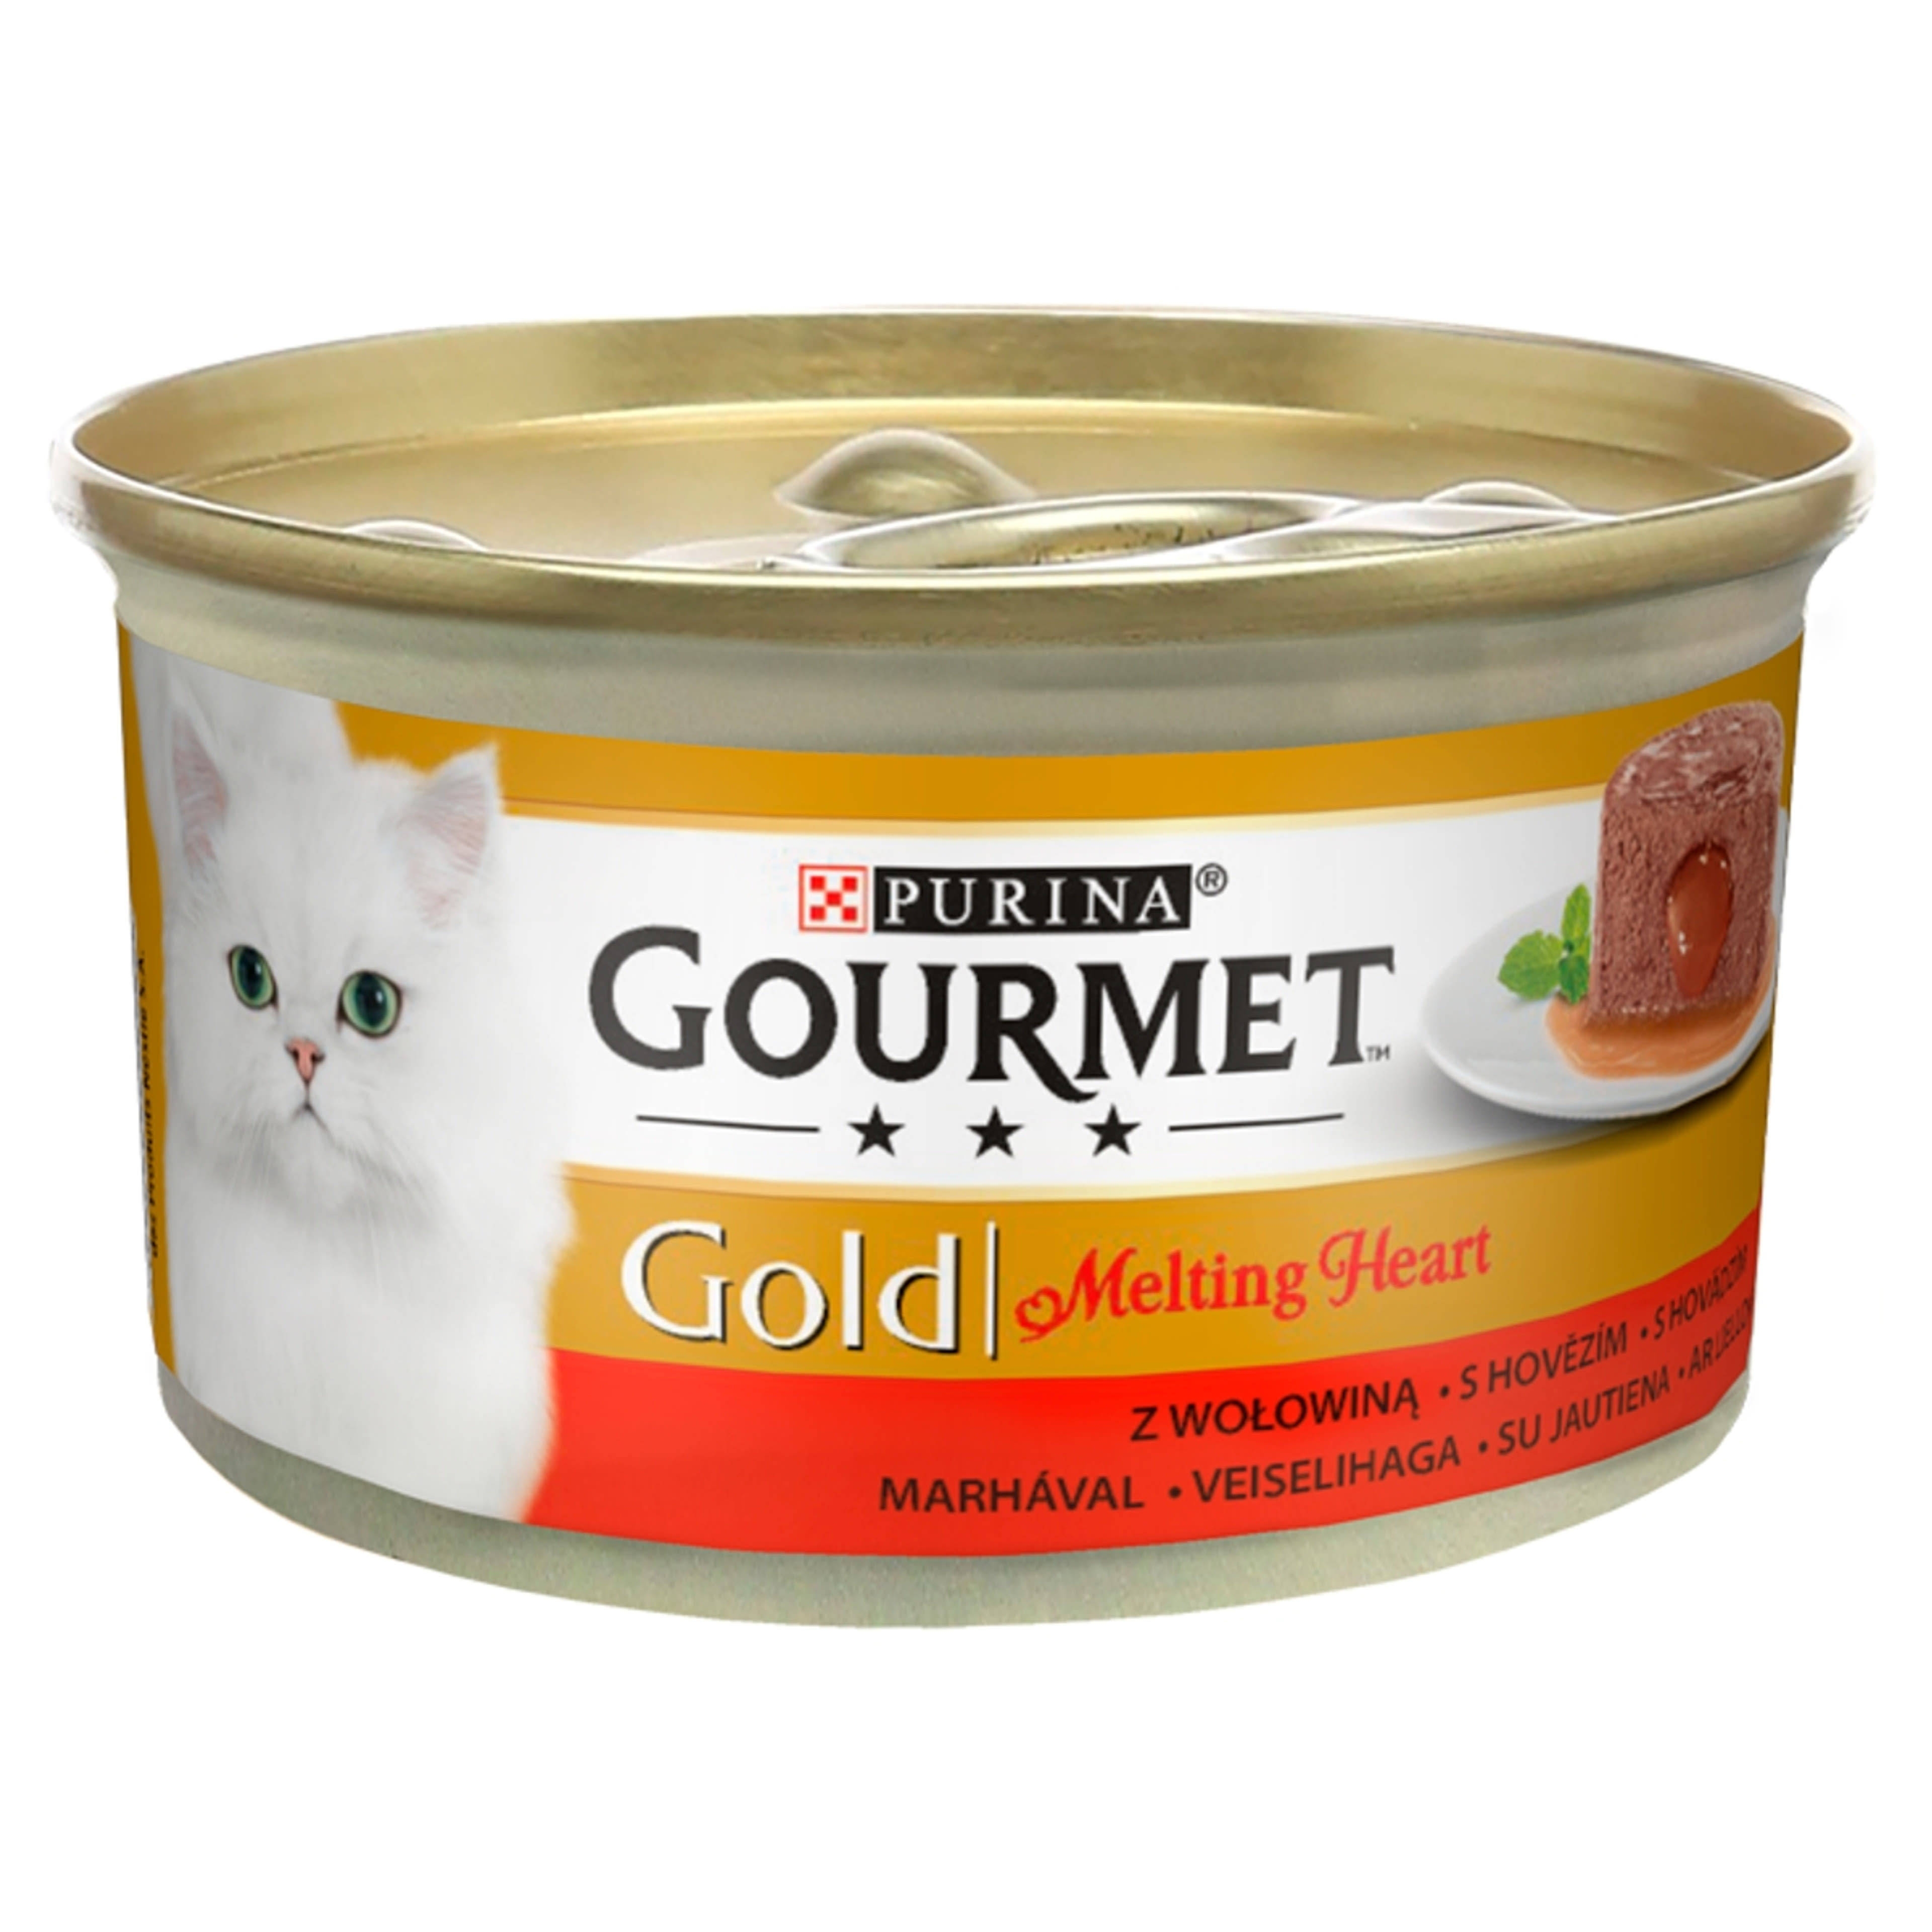 Gourmet gold melting macskáknak marhával - 85 g-1